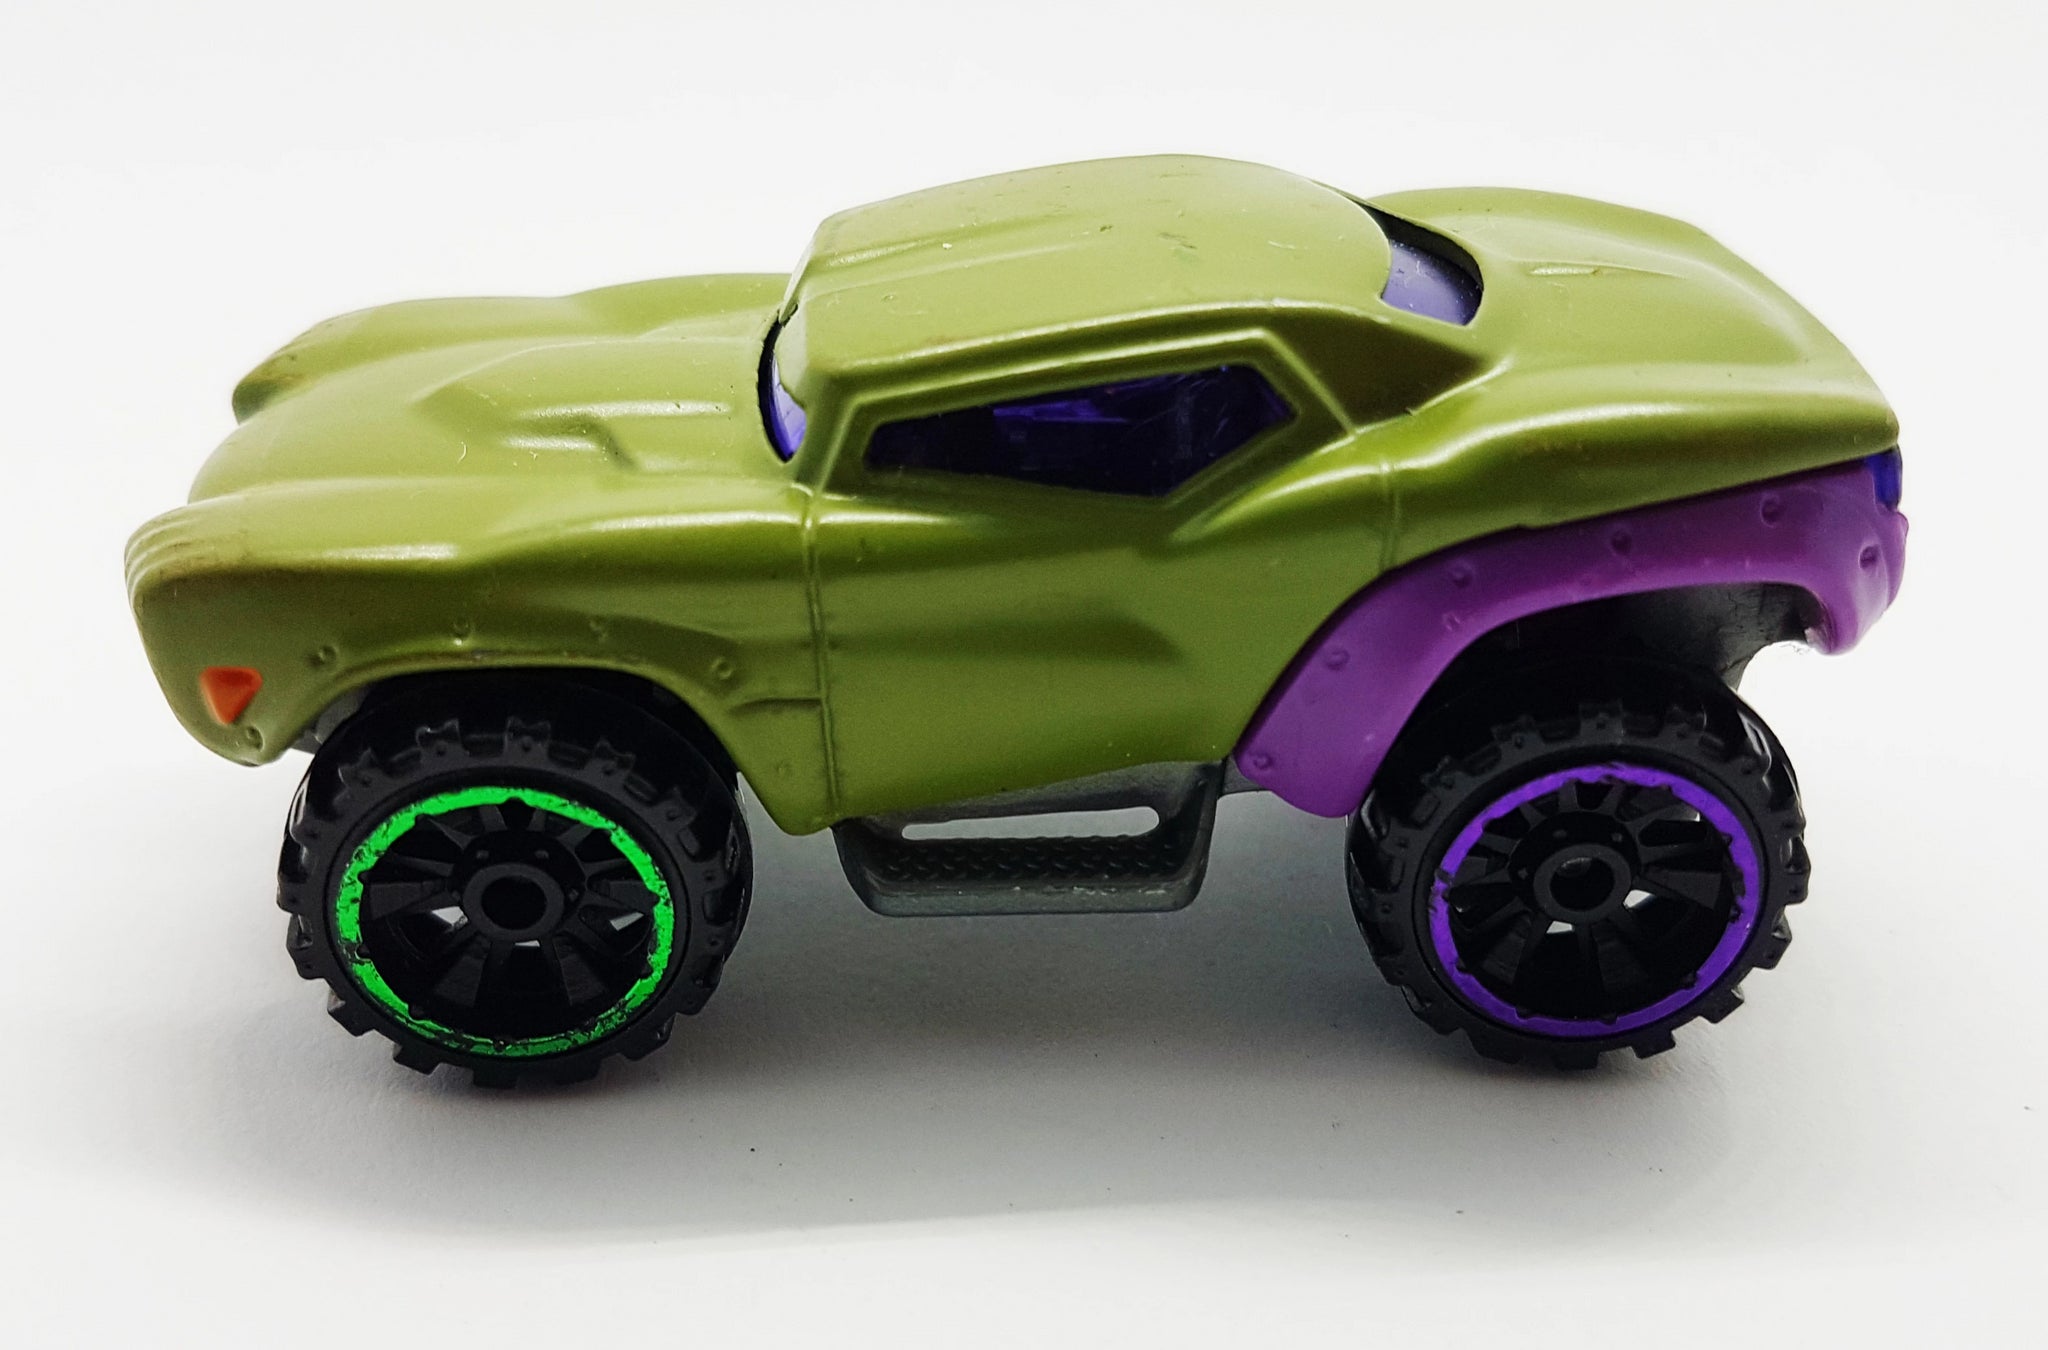 hulk hot wheels car